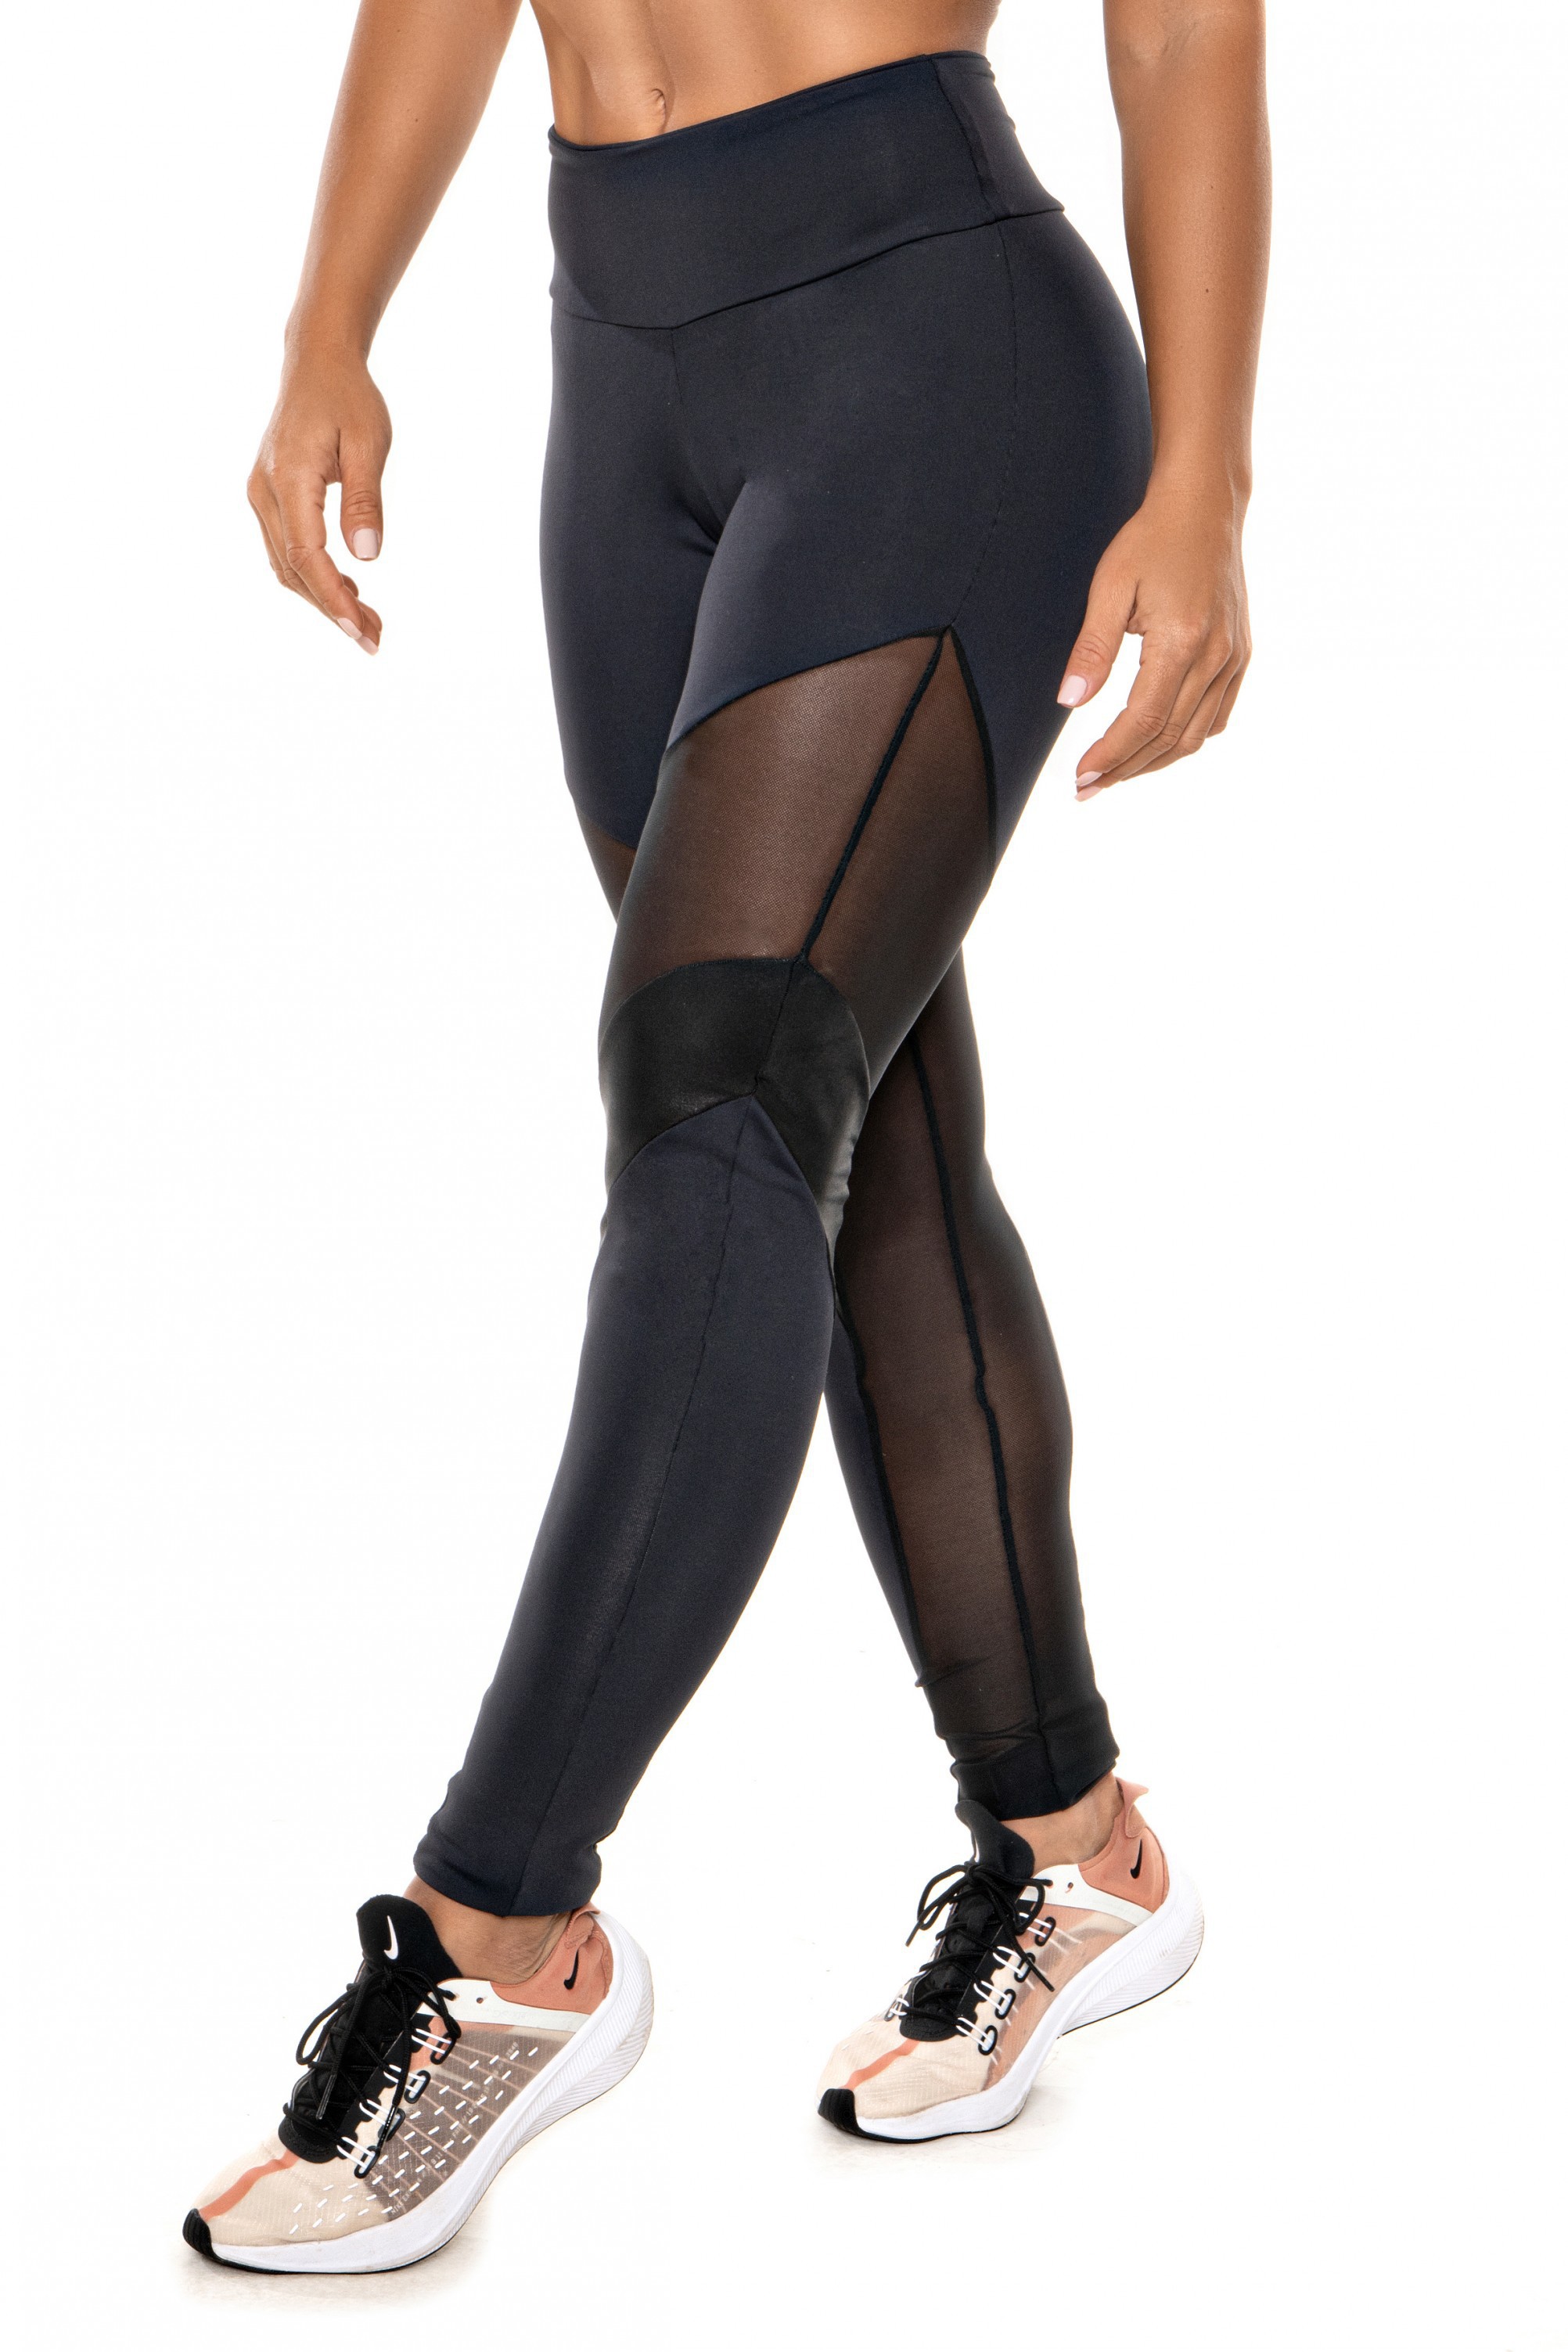 Black supplex capri fitness leggings for women, luxury sports leggings